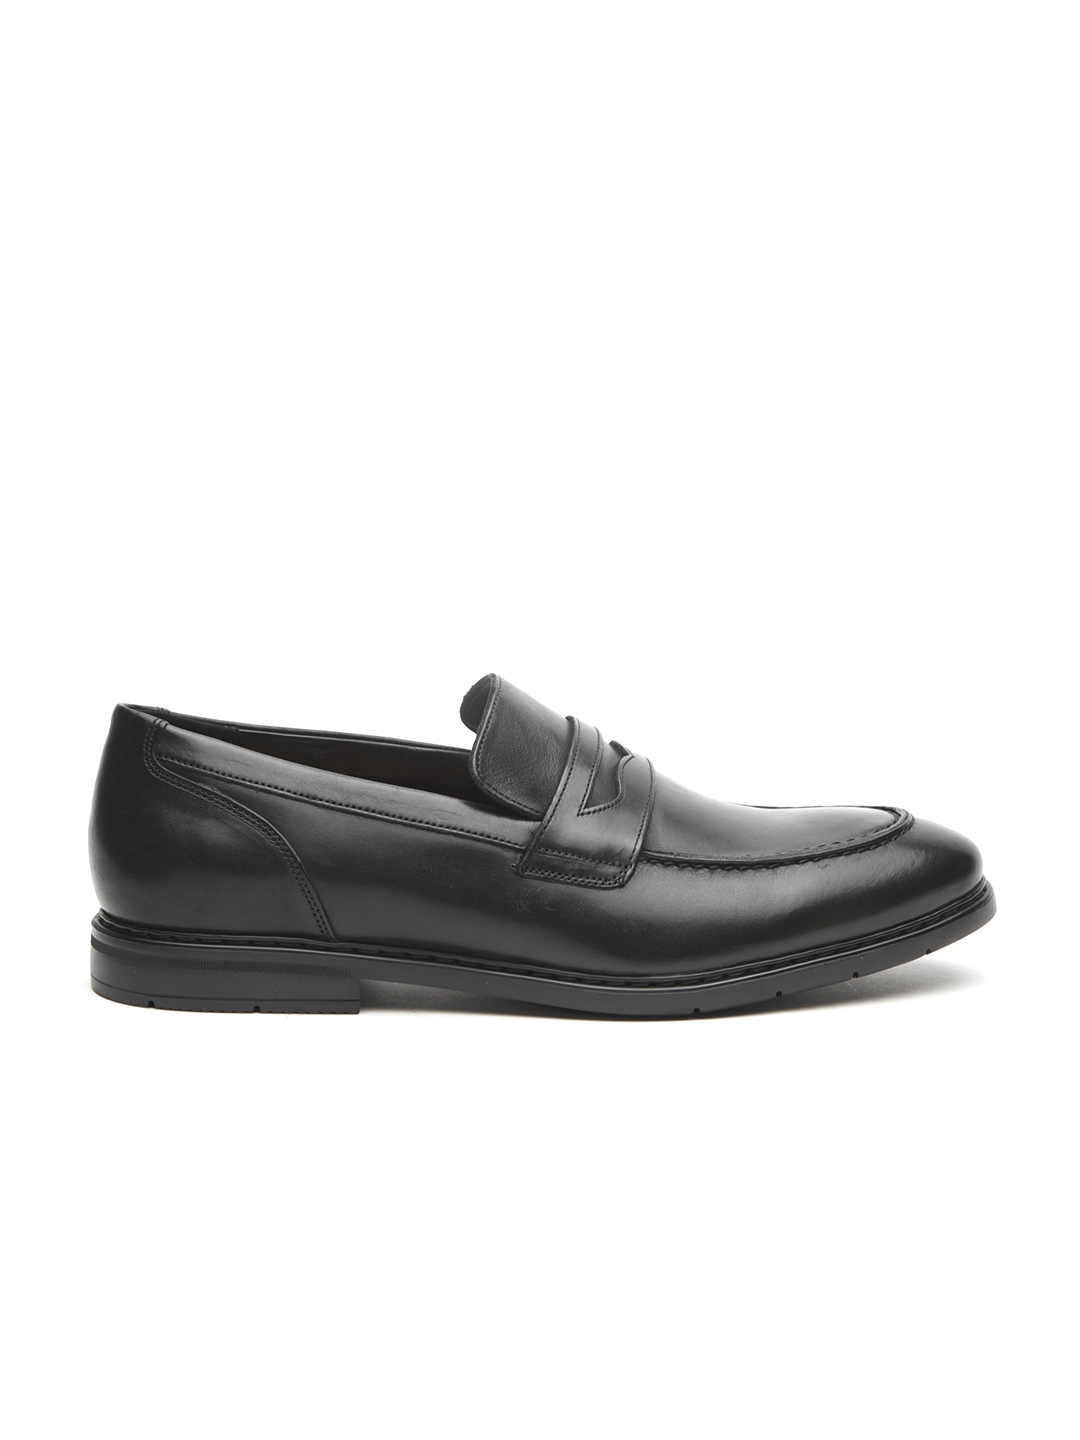 Feudal Amanecer Tiranía Buy Clarks Men Black Leather Formal Penny Loafers - Formal Shoes for Men  2580915 | Myntra